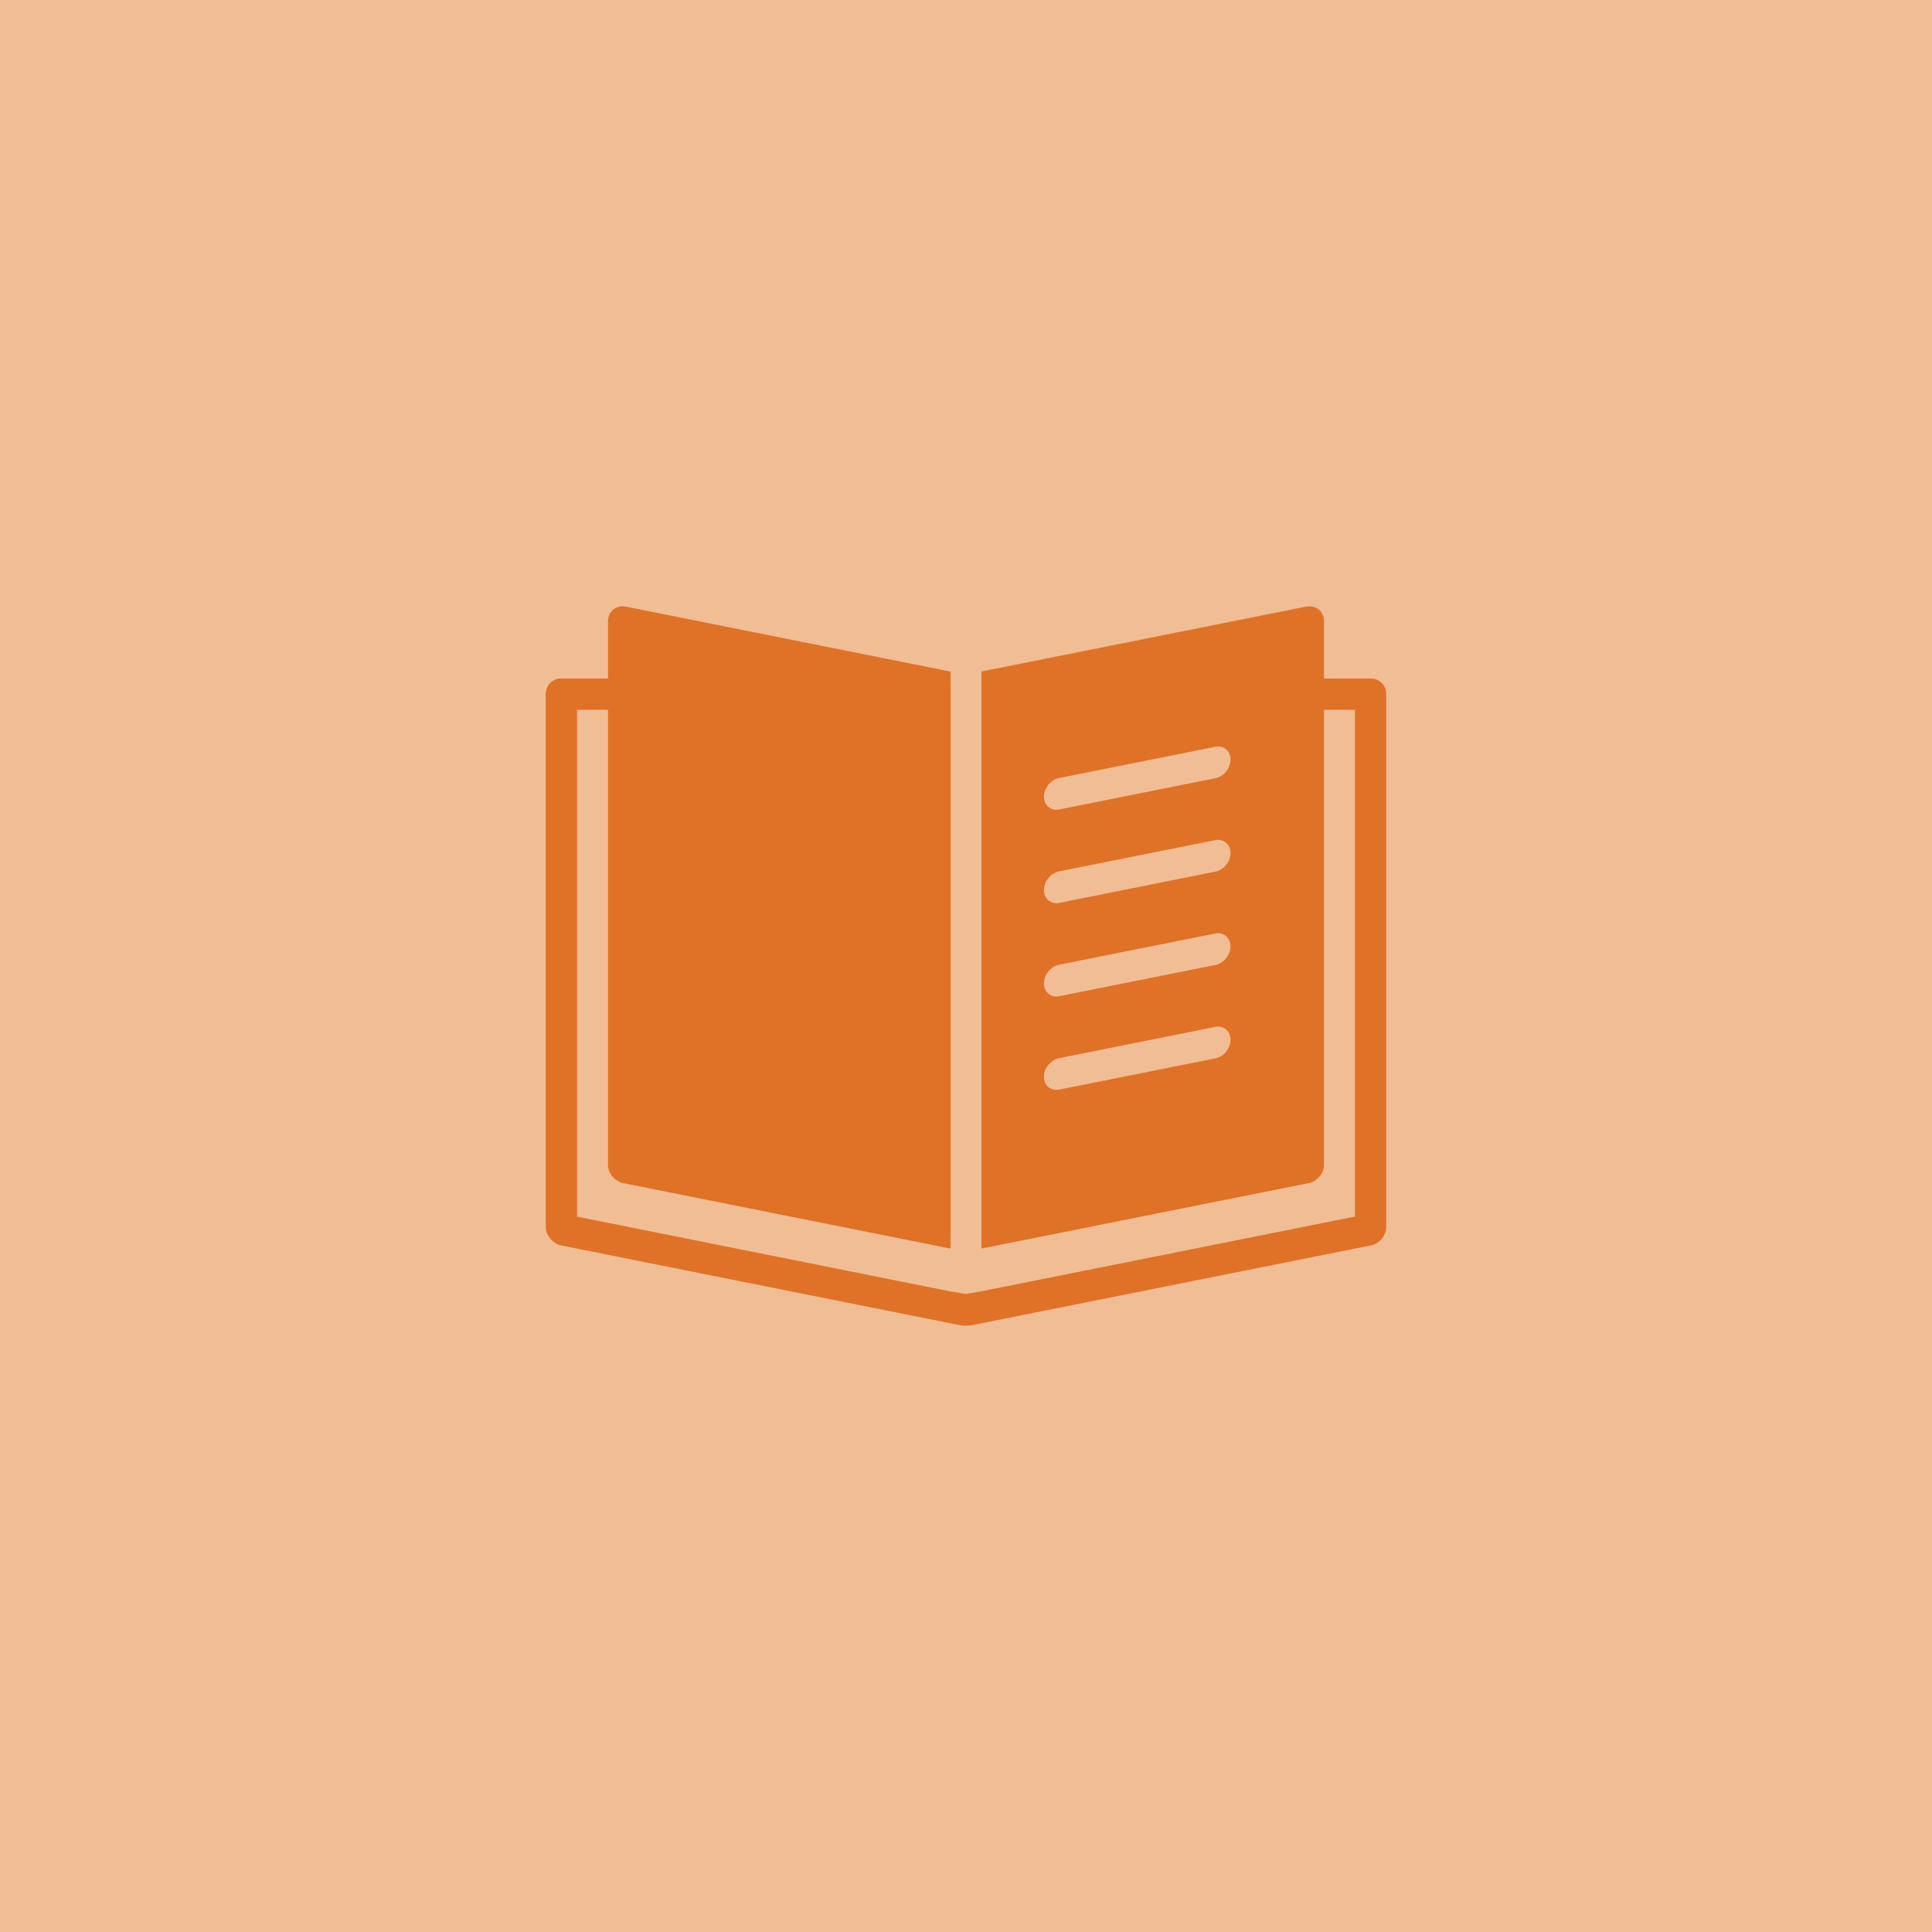 Orange graphic of a book